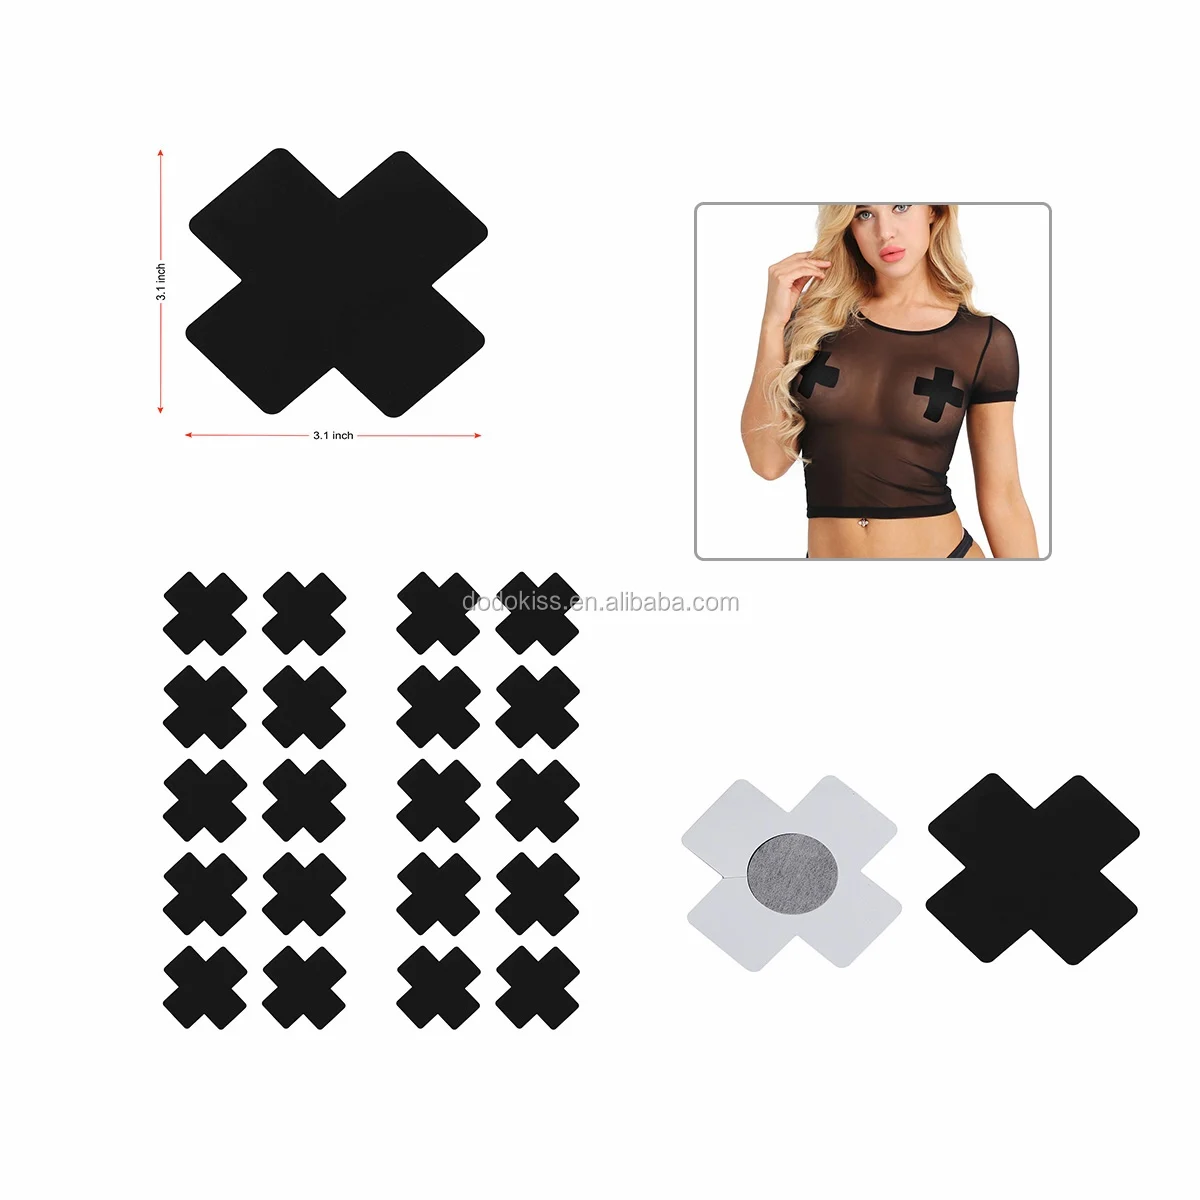 Self-Adhesive Black X Cross Nipple Pasties Covers Breast Stickers 2 pair in pack